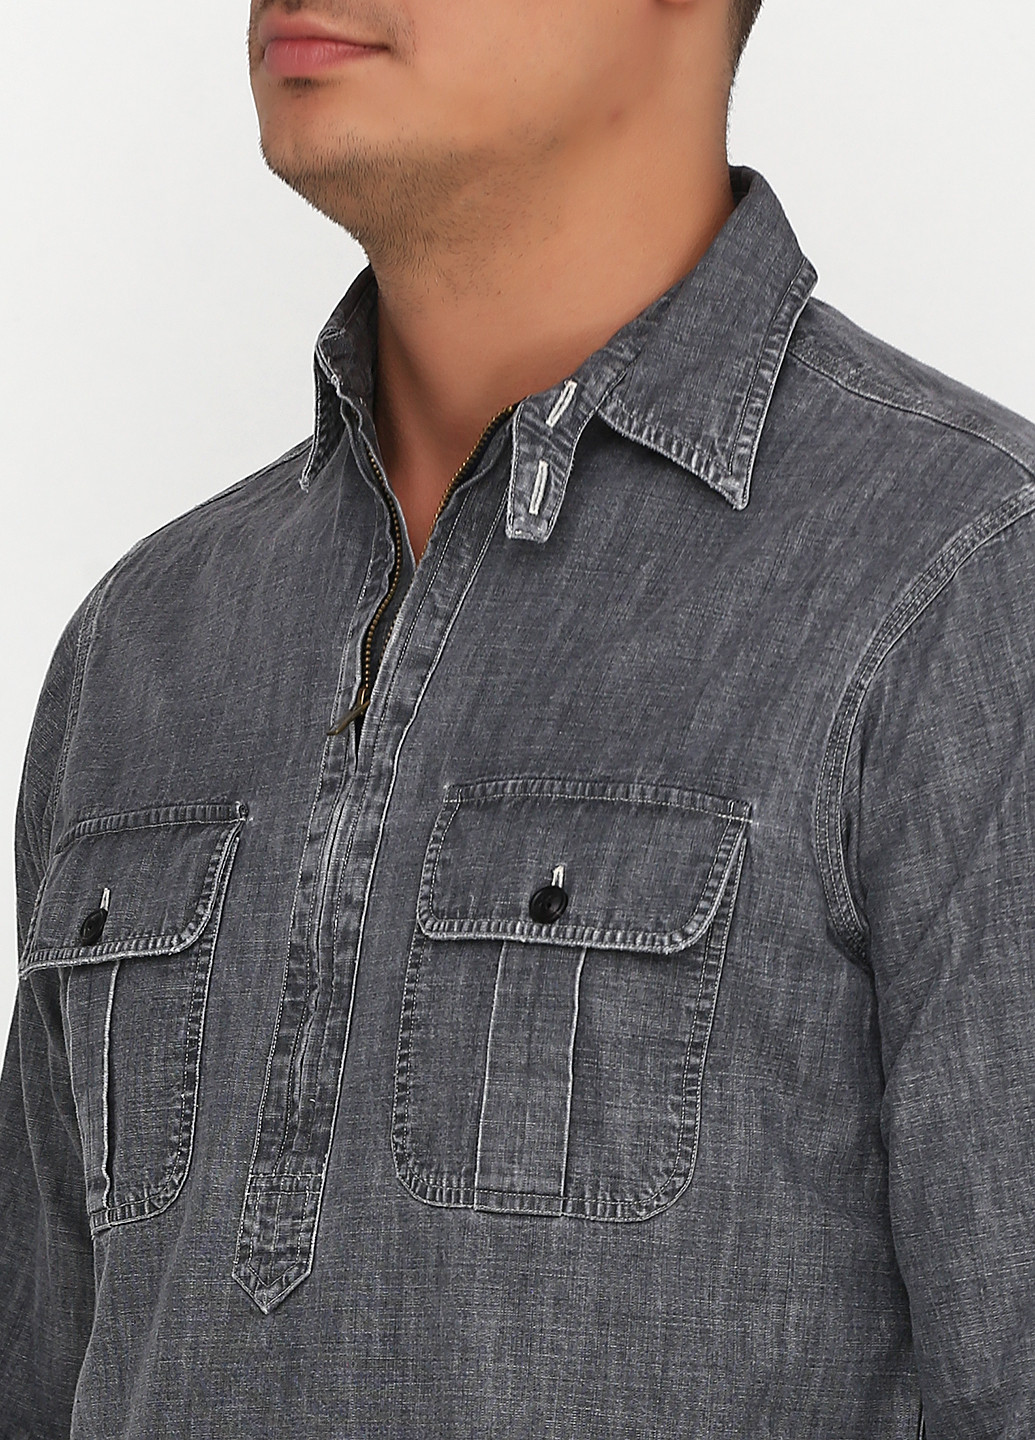 Серая джинсовая рубашка меланж Ralph Lauren с длинным рукавом